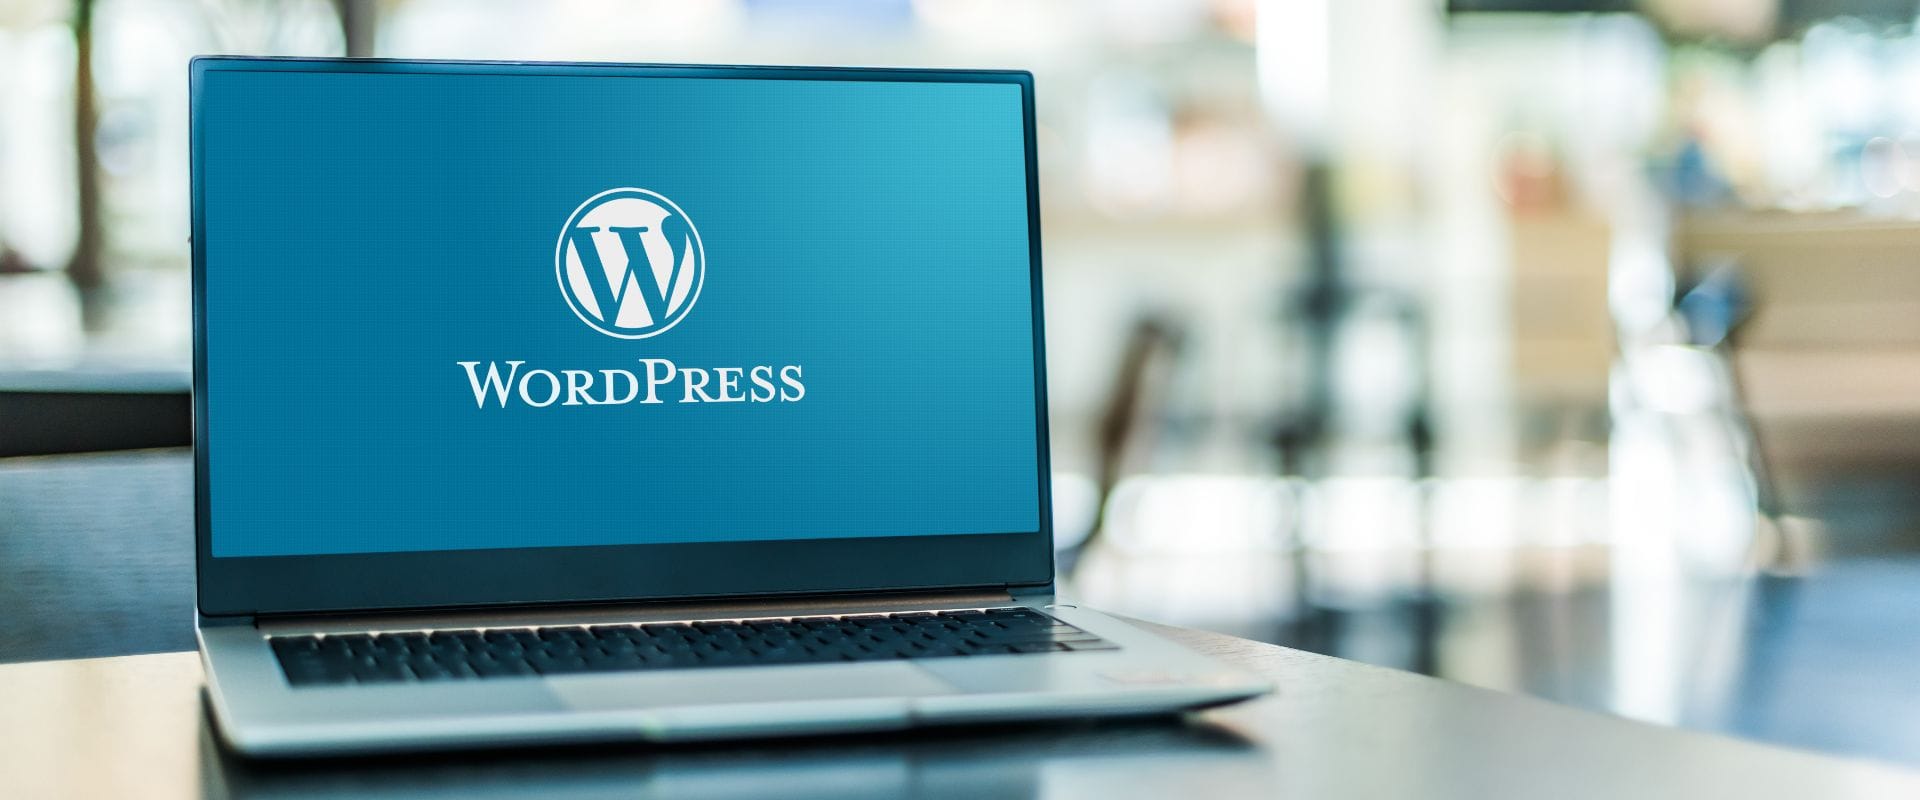 Laptop computer displaying logo of WordPress